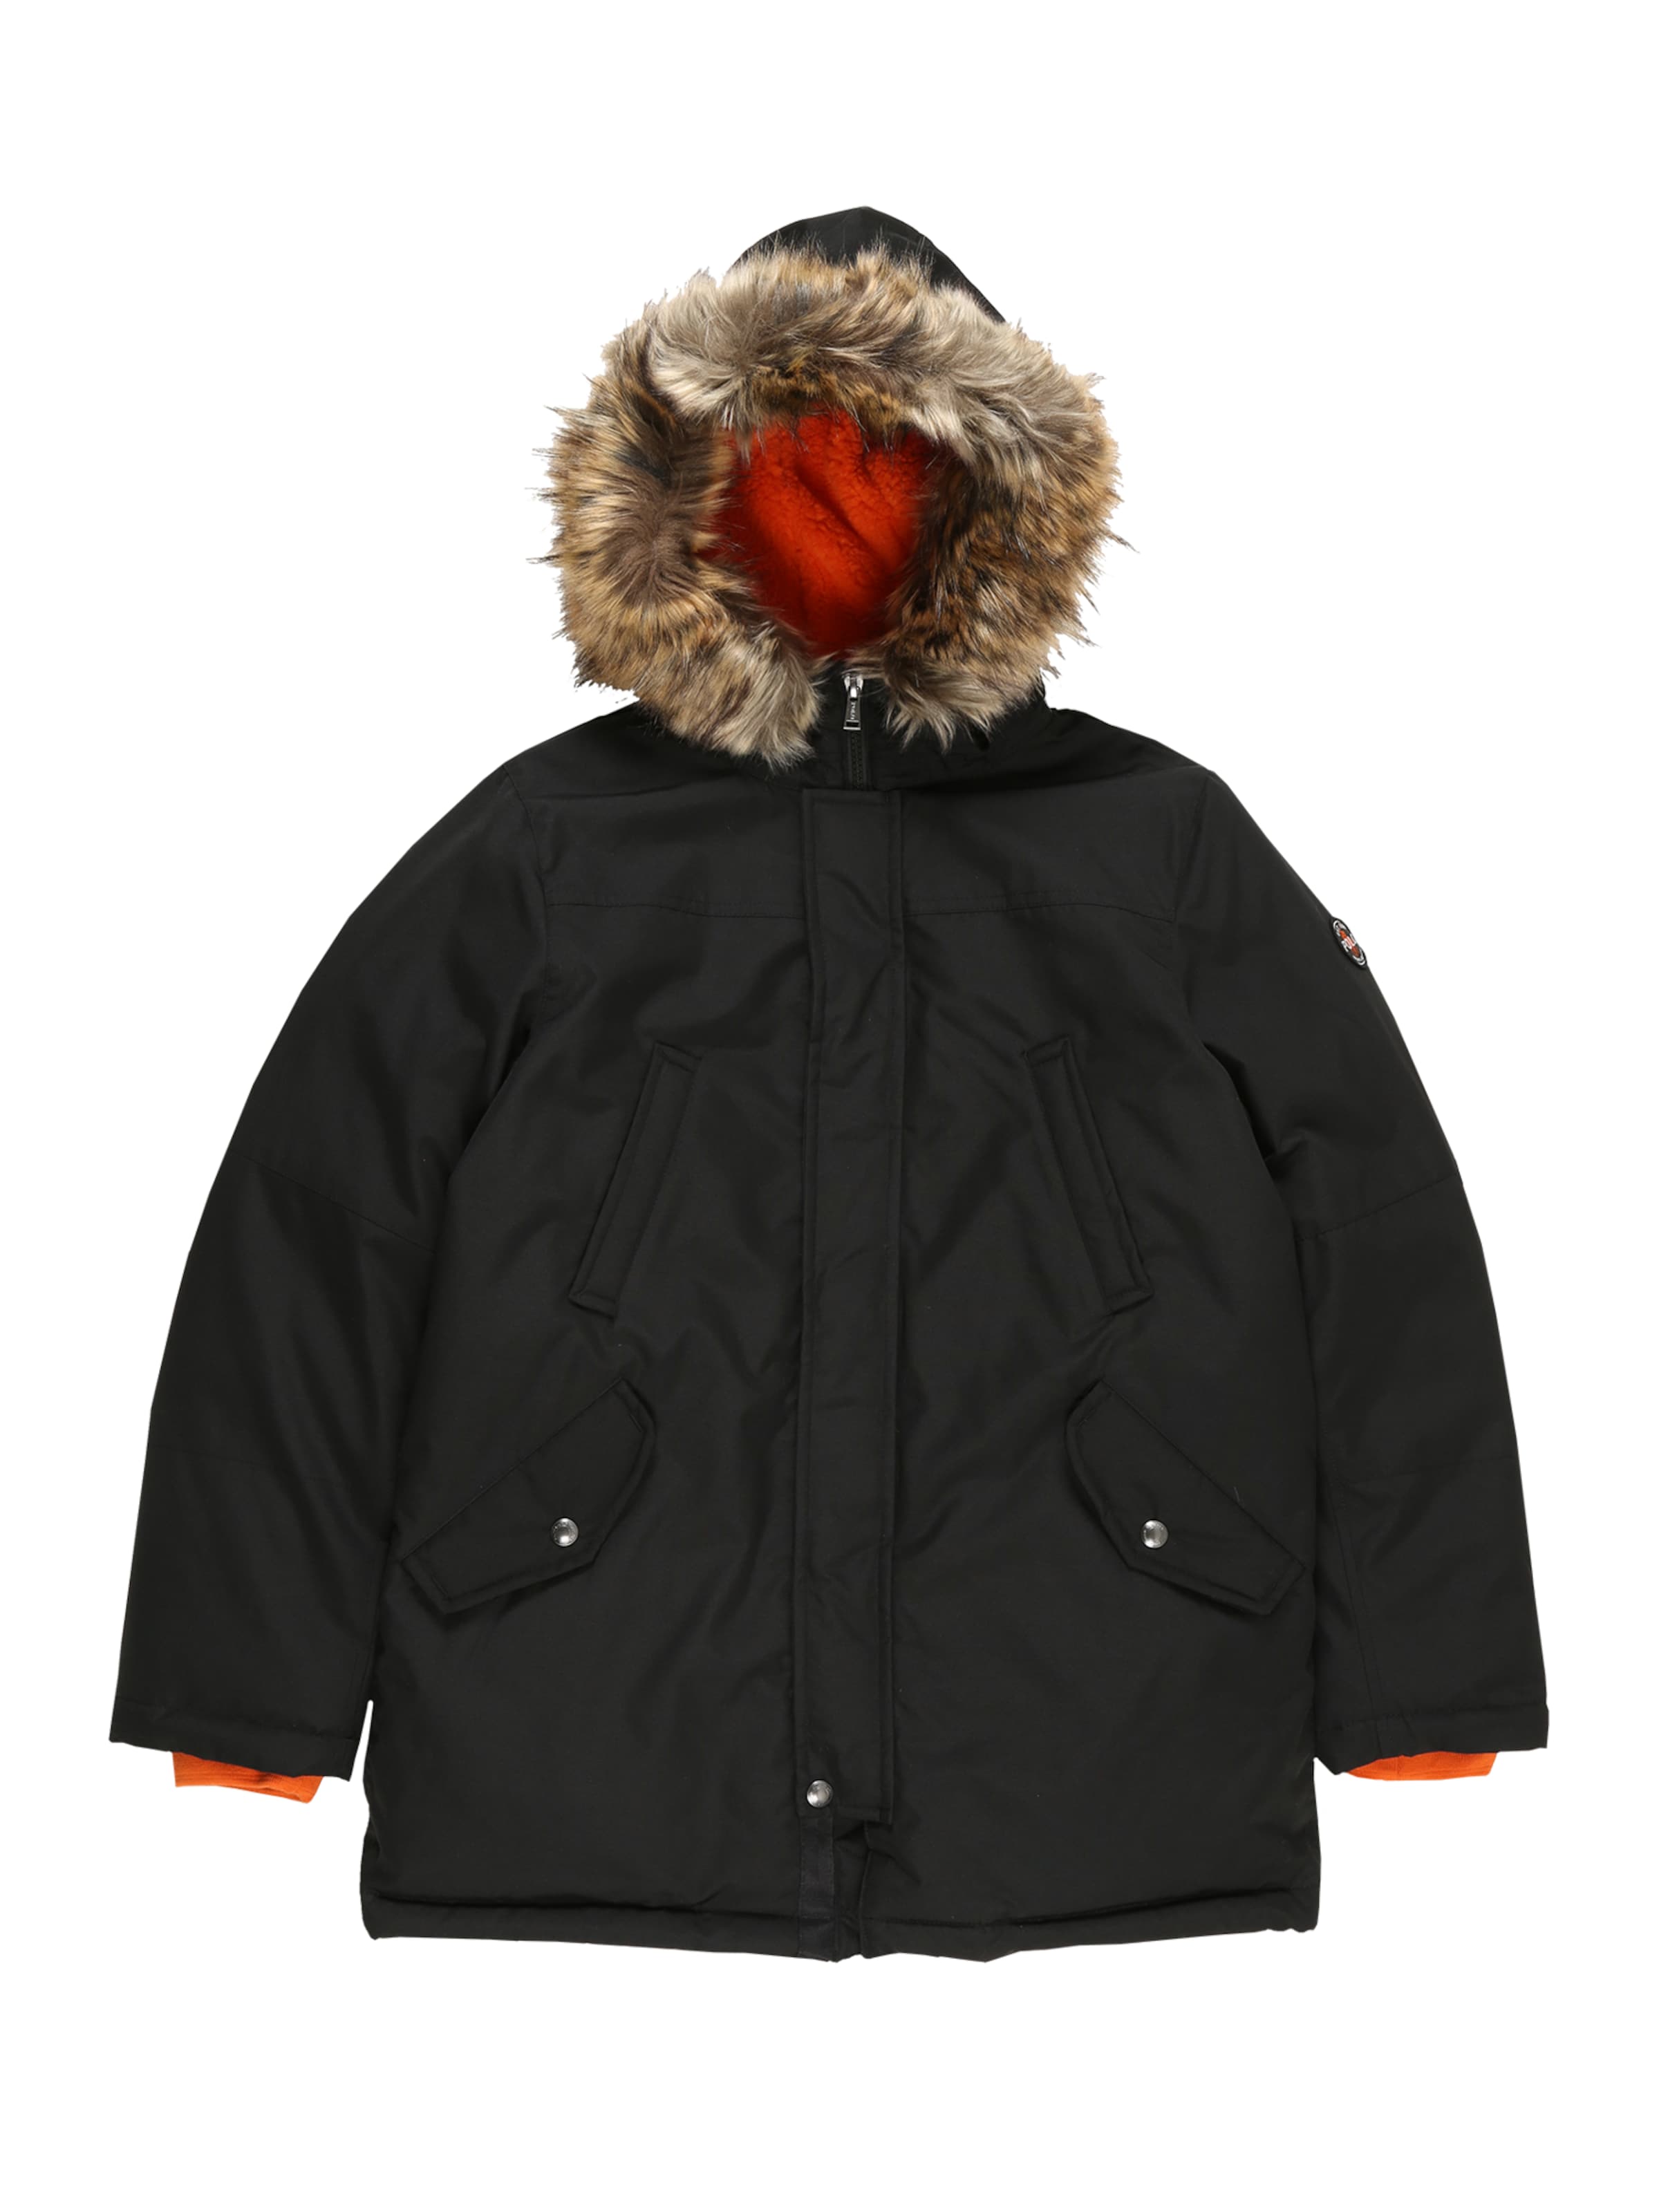 winter jacket polo ralph lauren